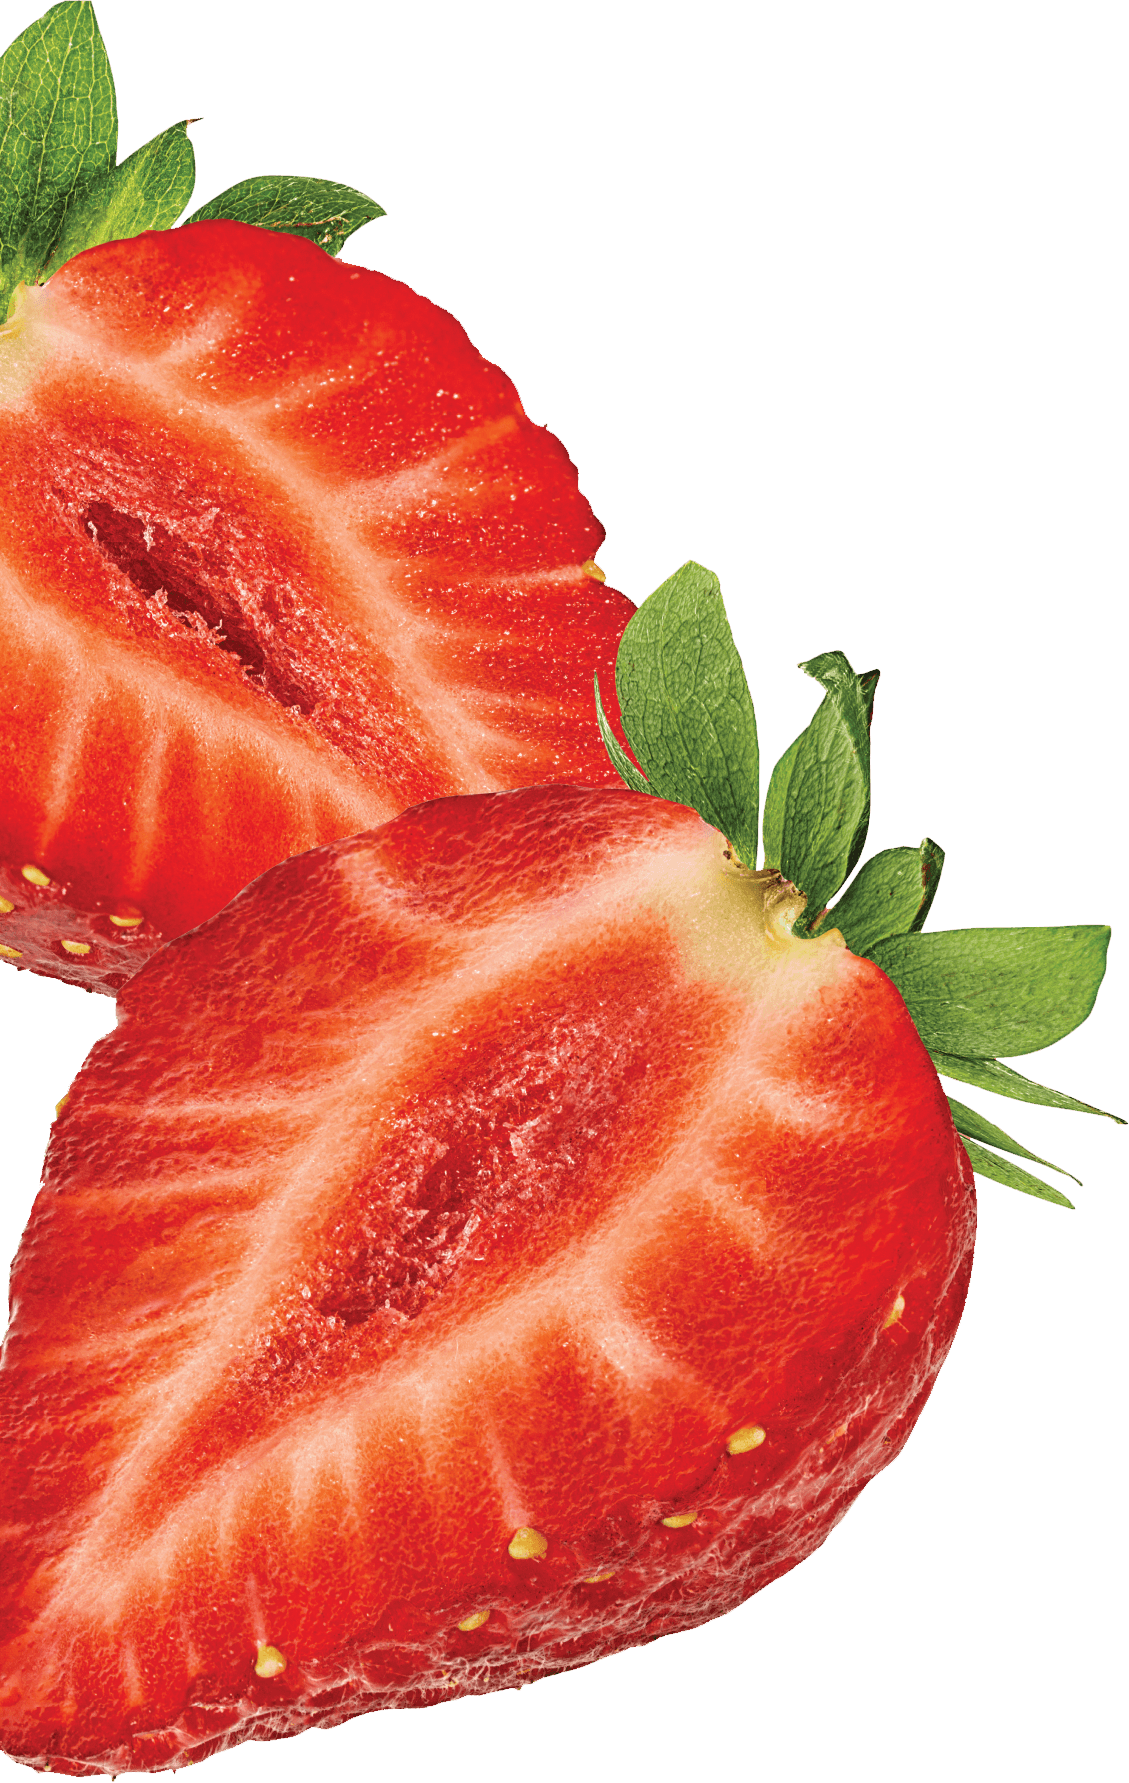 miyogurt-strawberry